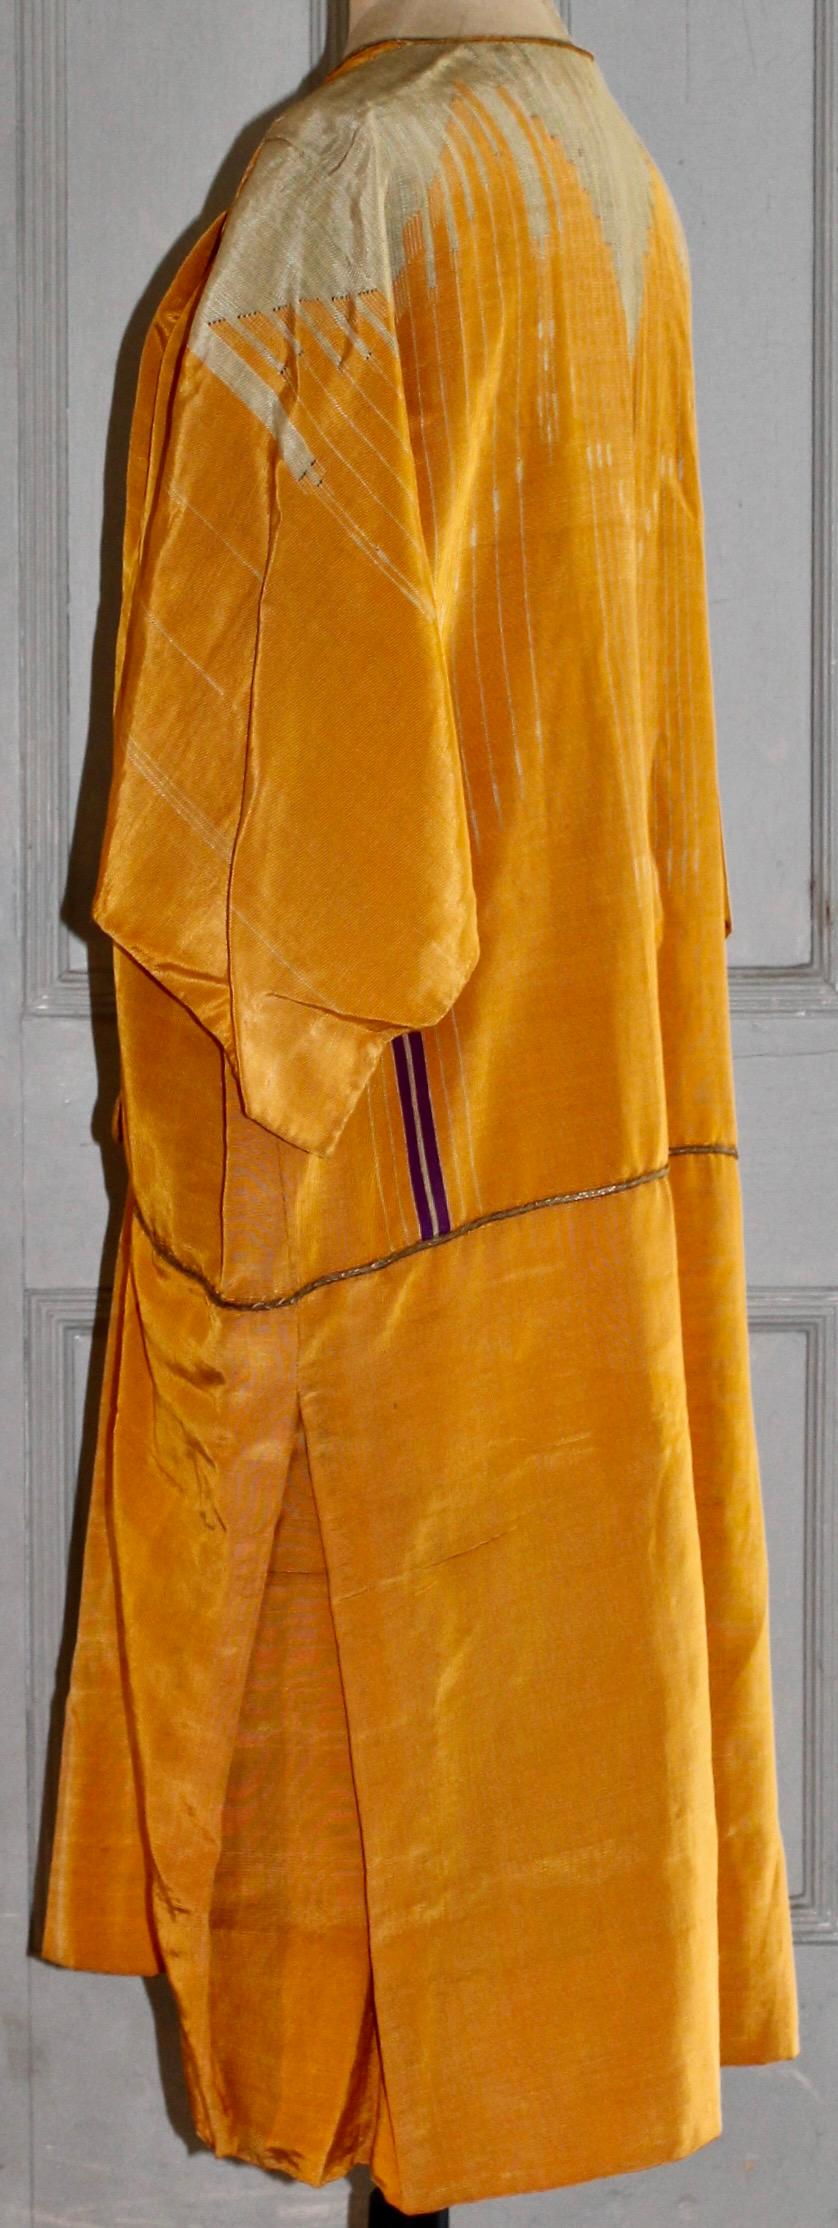 Orange Abayah comme une robe, à la manière d'Orléans en vente